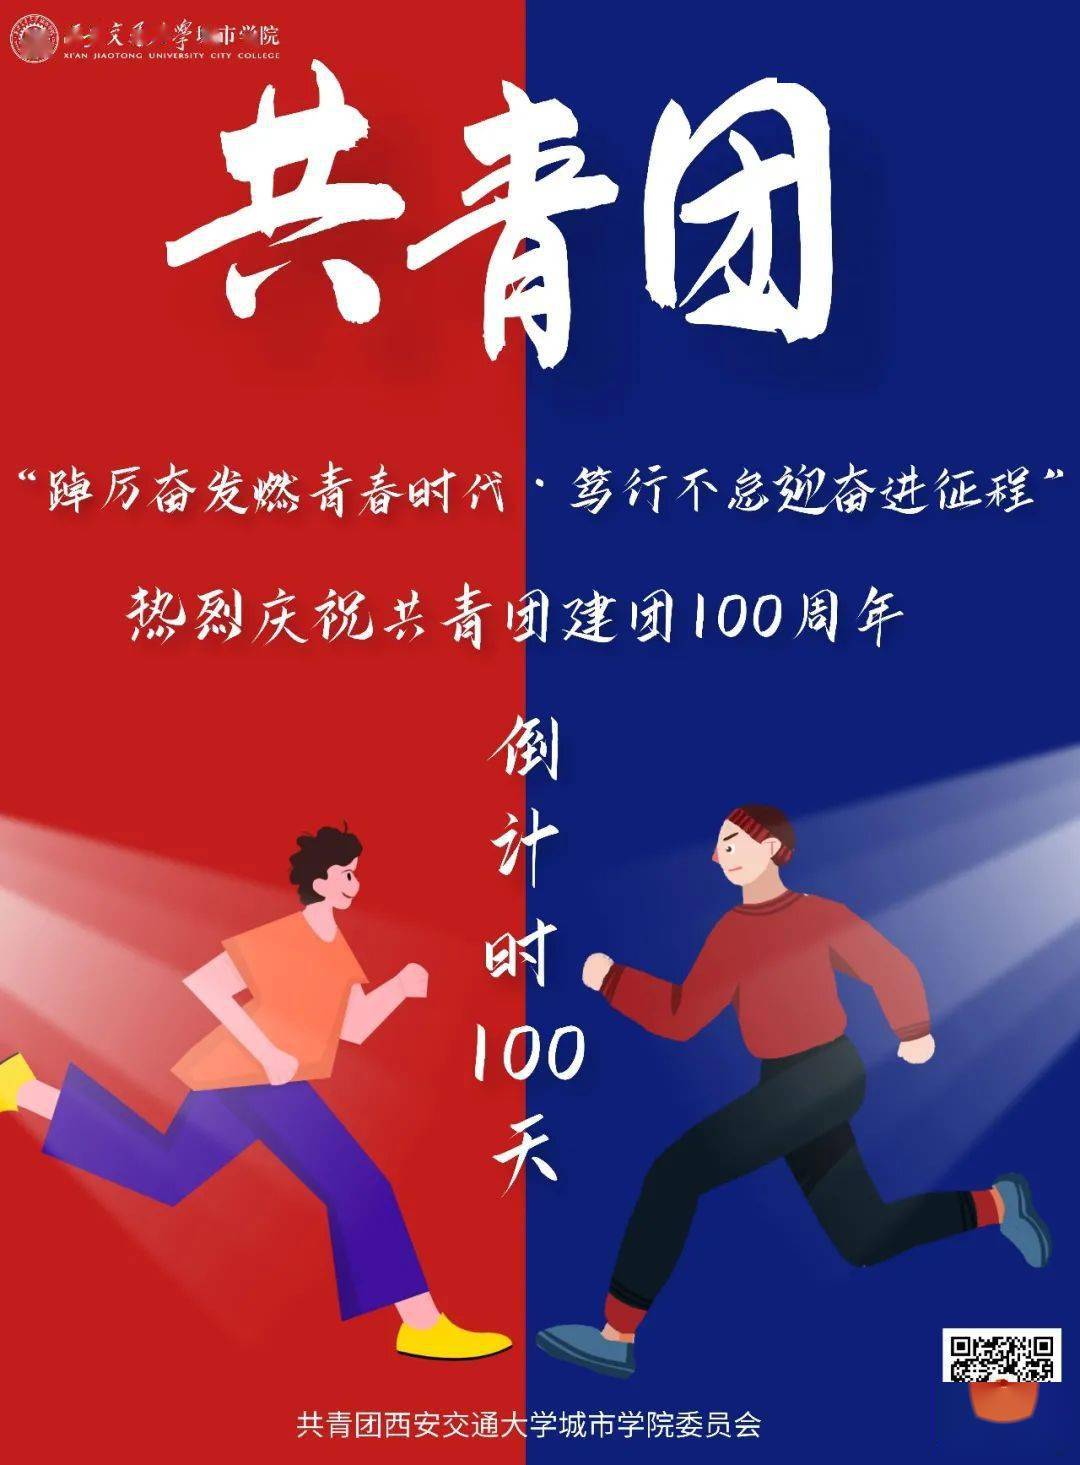 距离建团100周年倒计时第100天北京冬奥会2022年北京-张家口冬季奥林